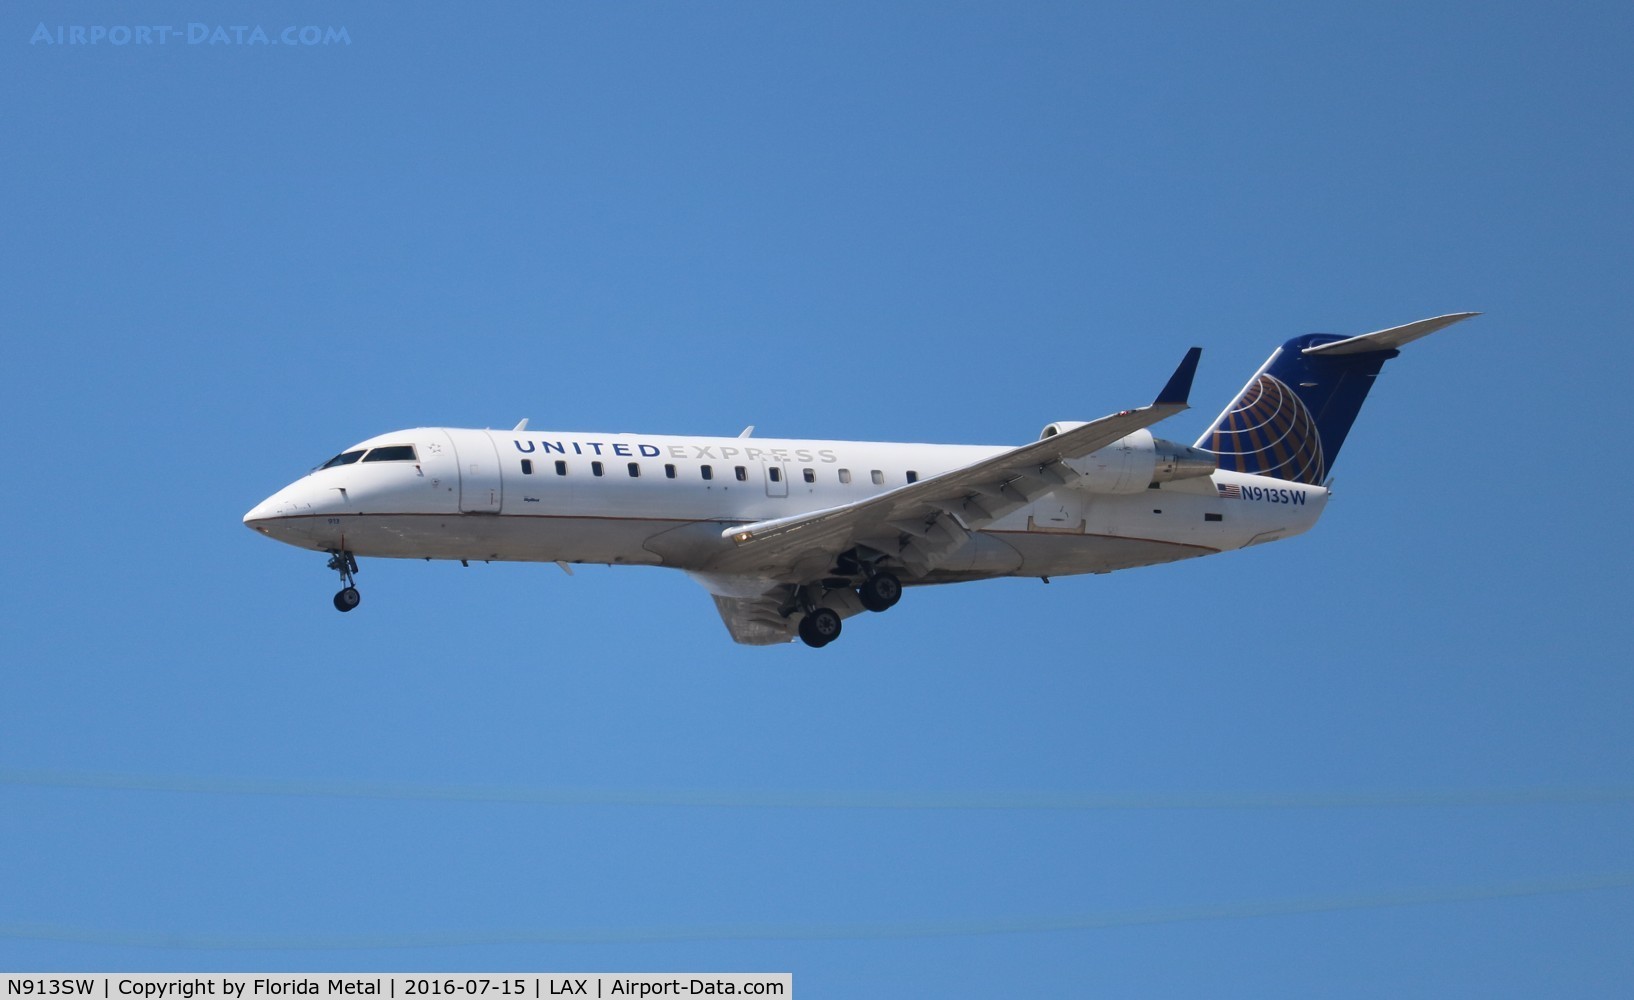 N913SW, 2001 Bombardier CRJ-200ER (CL-600-2B19) C/N 7597, United Express